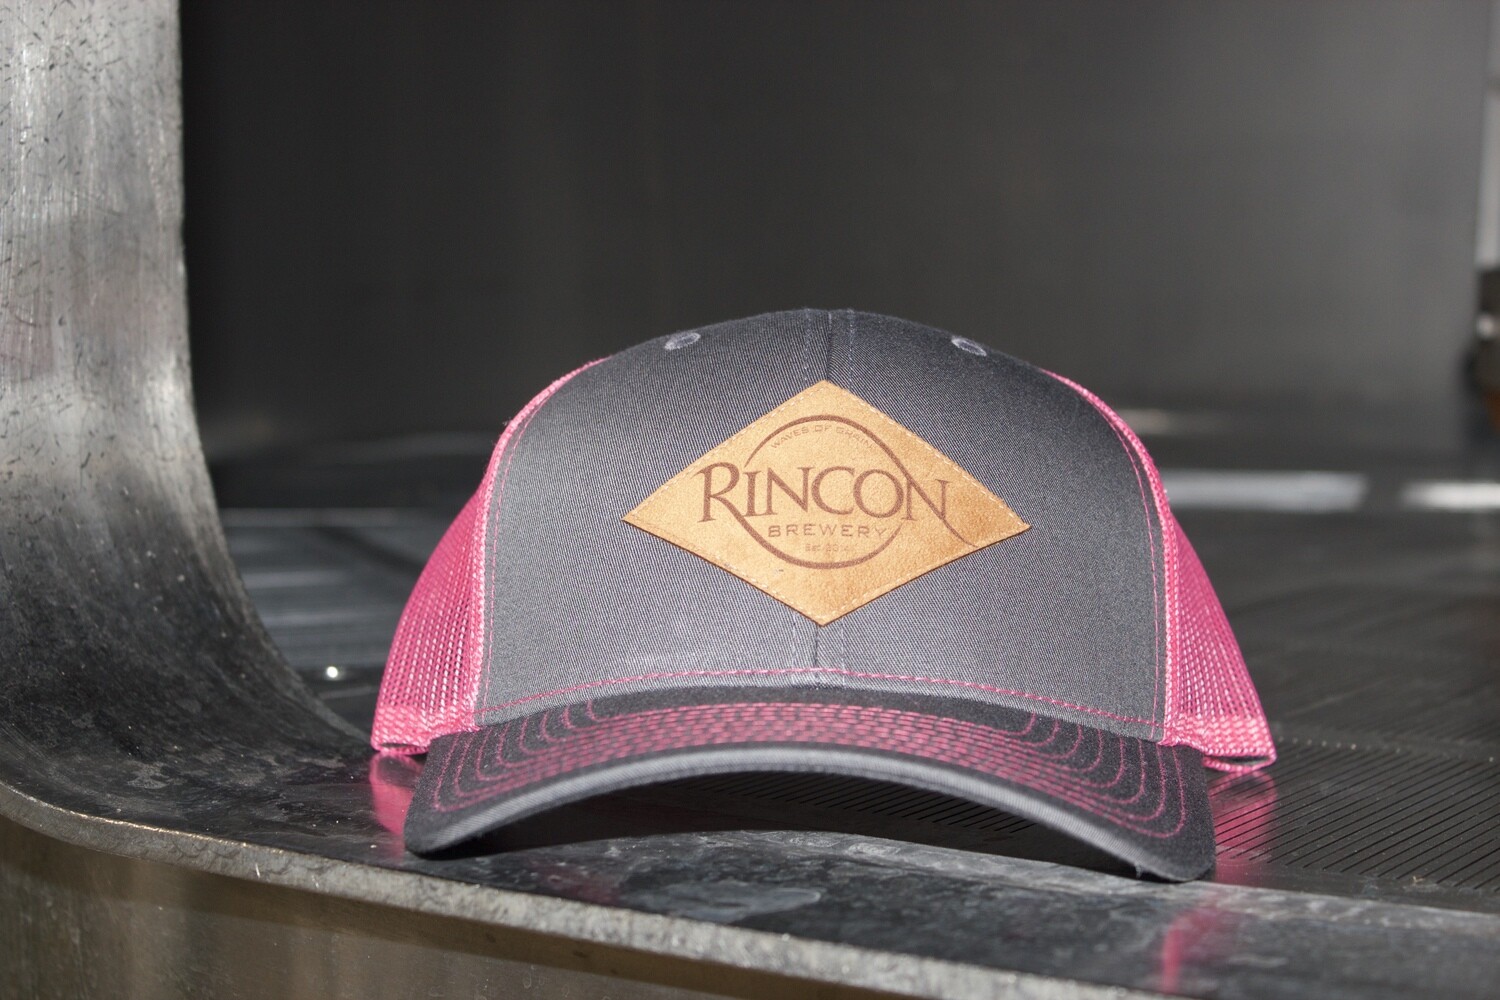 Grey/Pink "Rincon Brewery" Trucker